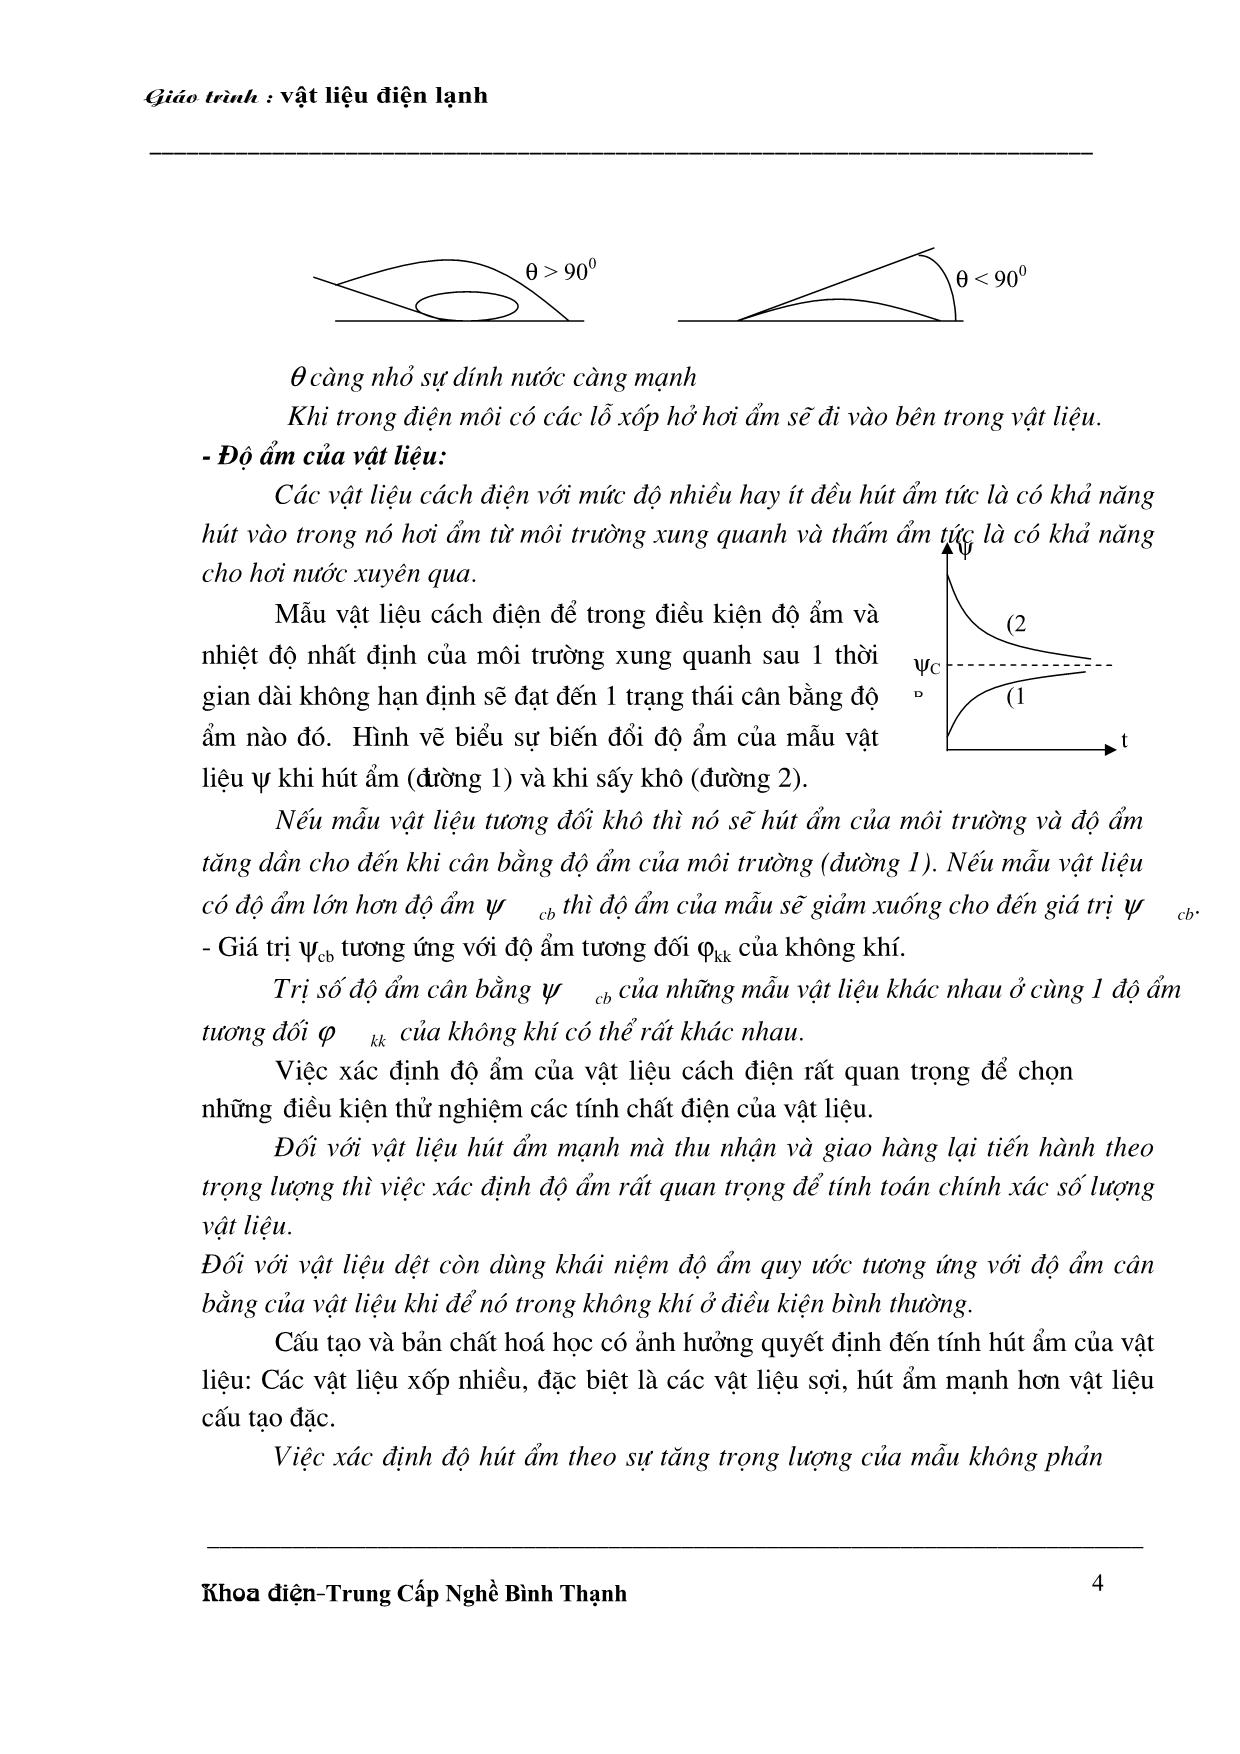 Giáo trình Vật liệu điện lạnh (Phần 1) trang 4